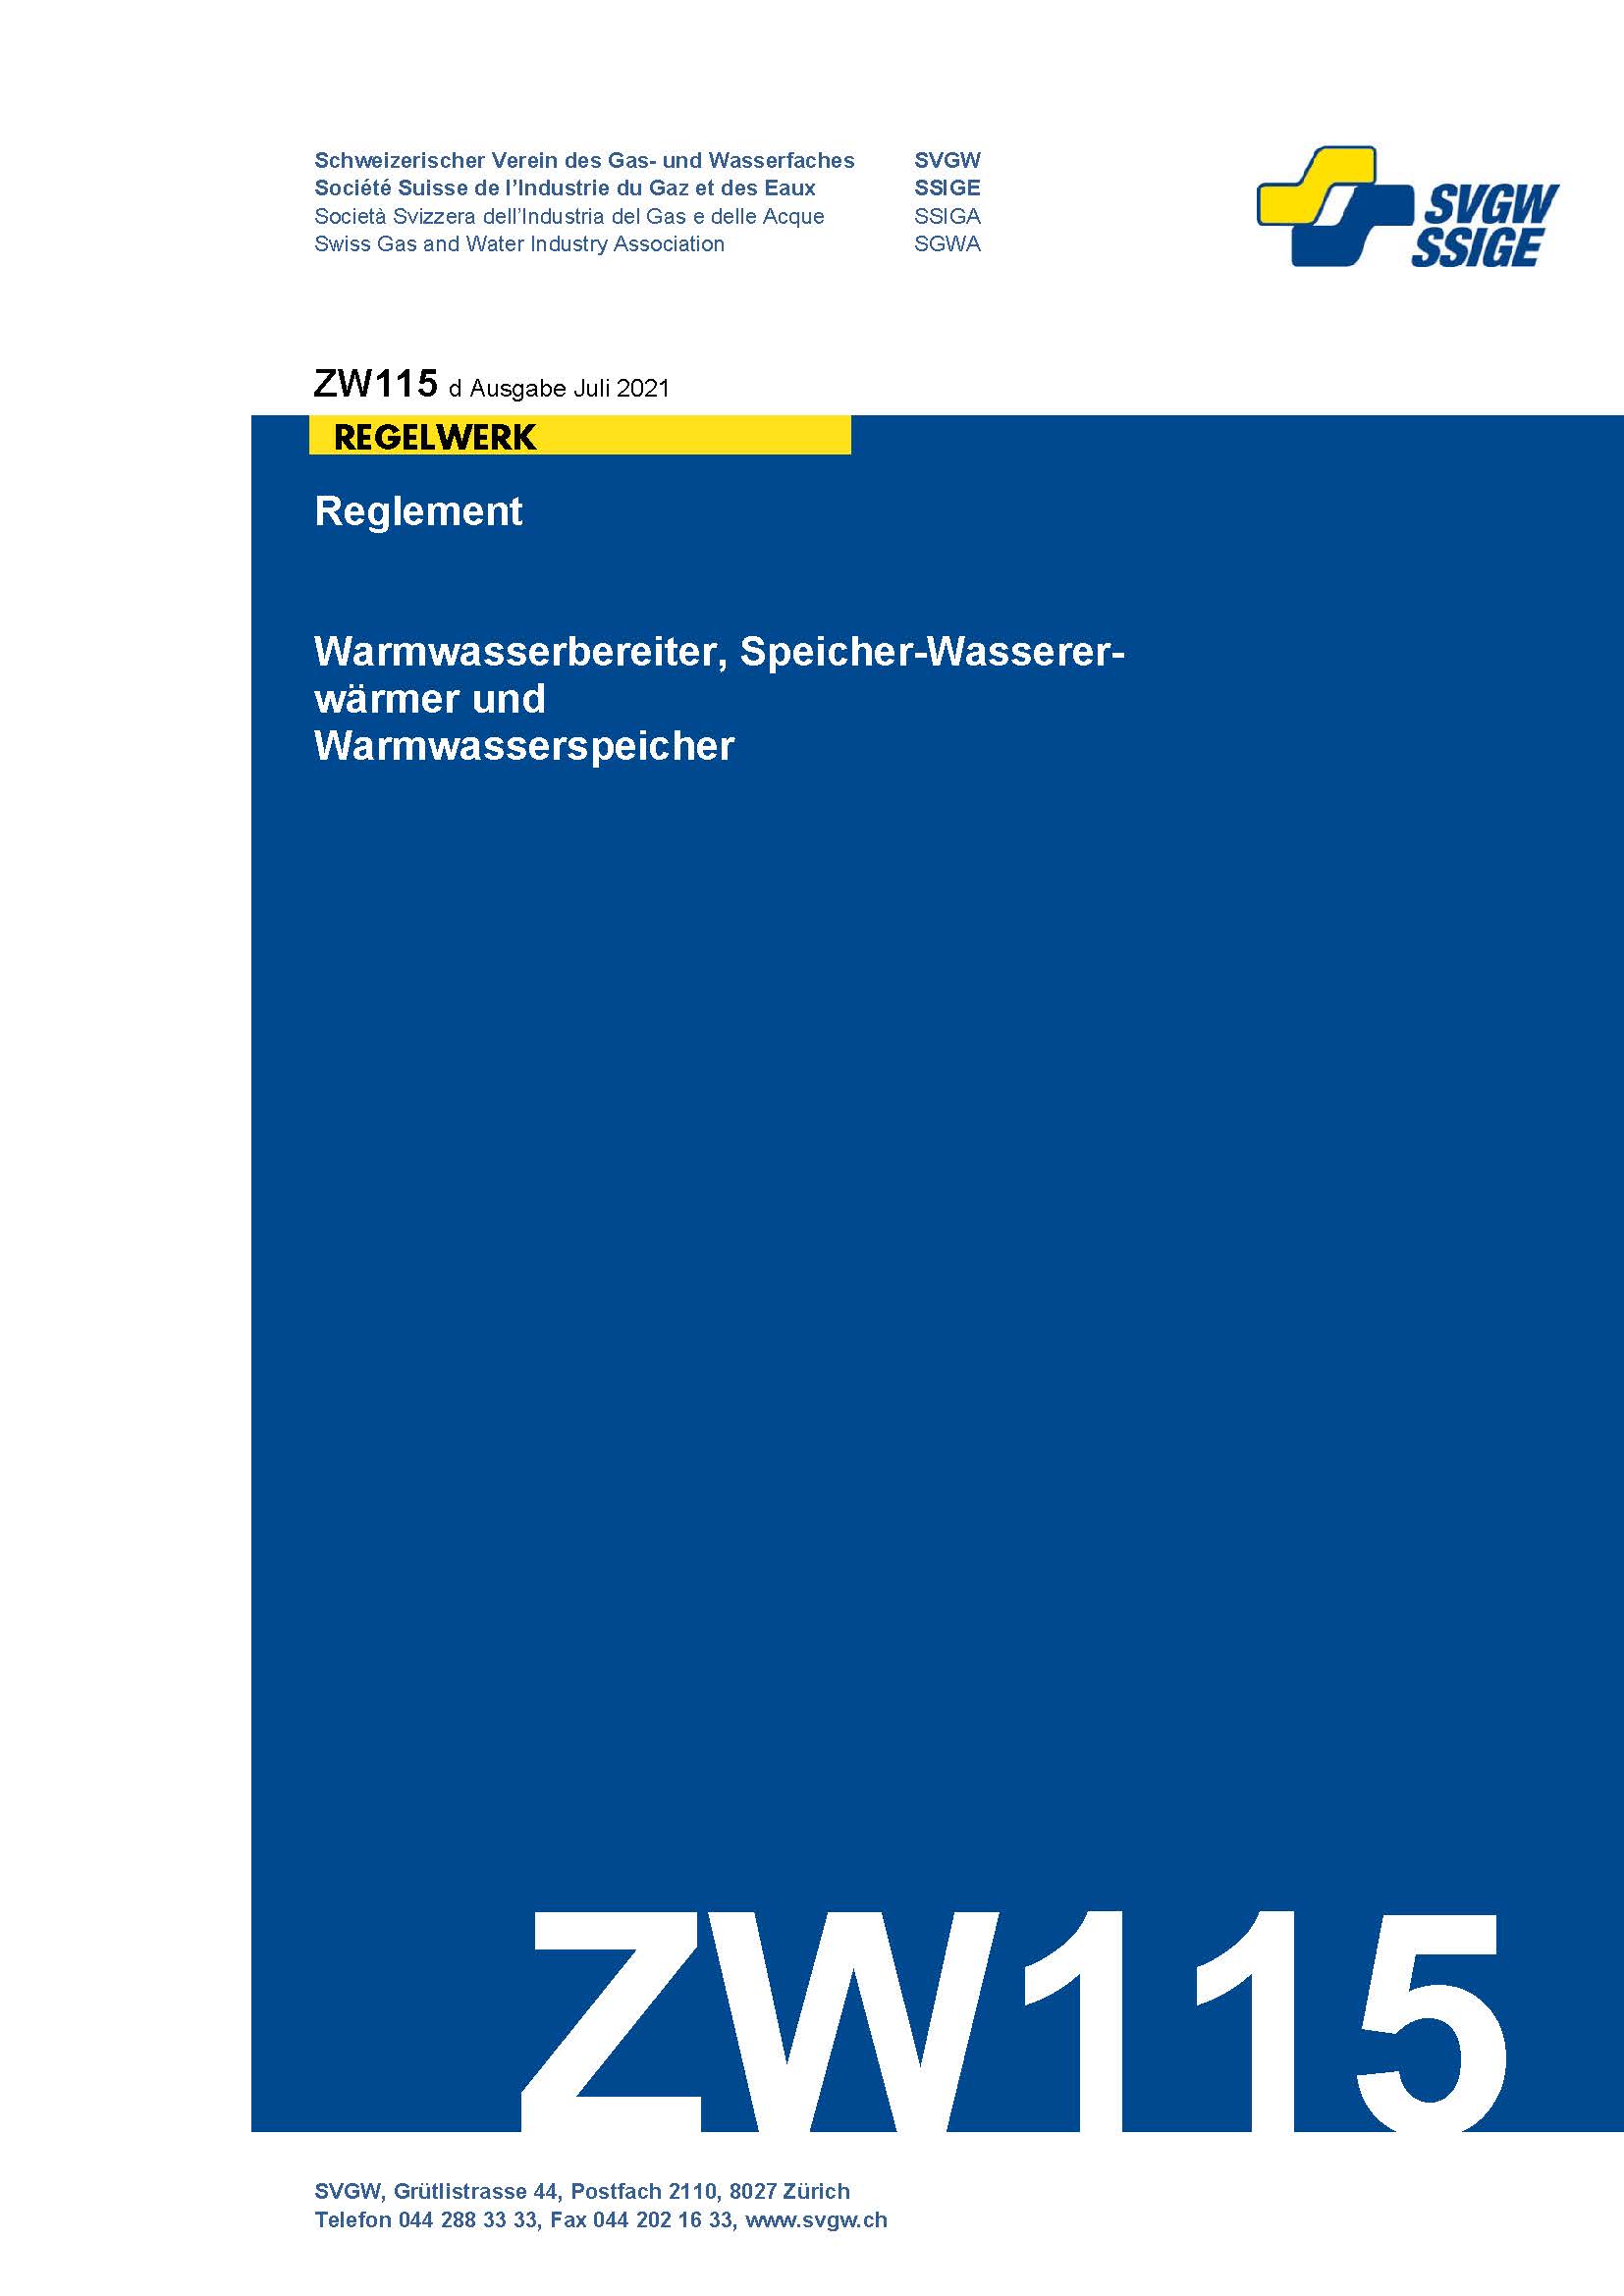 ZW115 d - Reglement; Warmwasserbereiter, Speicher-Wassererwärmer und Warmwasserspeicher